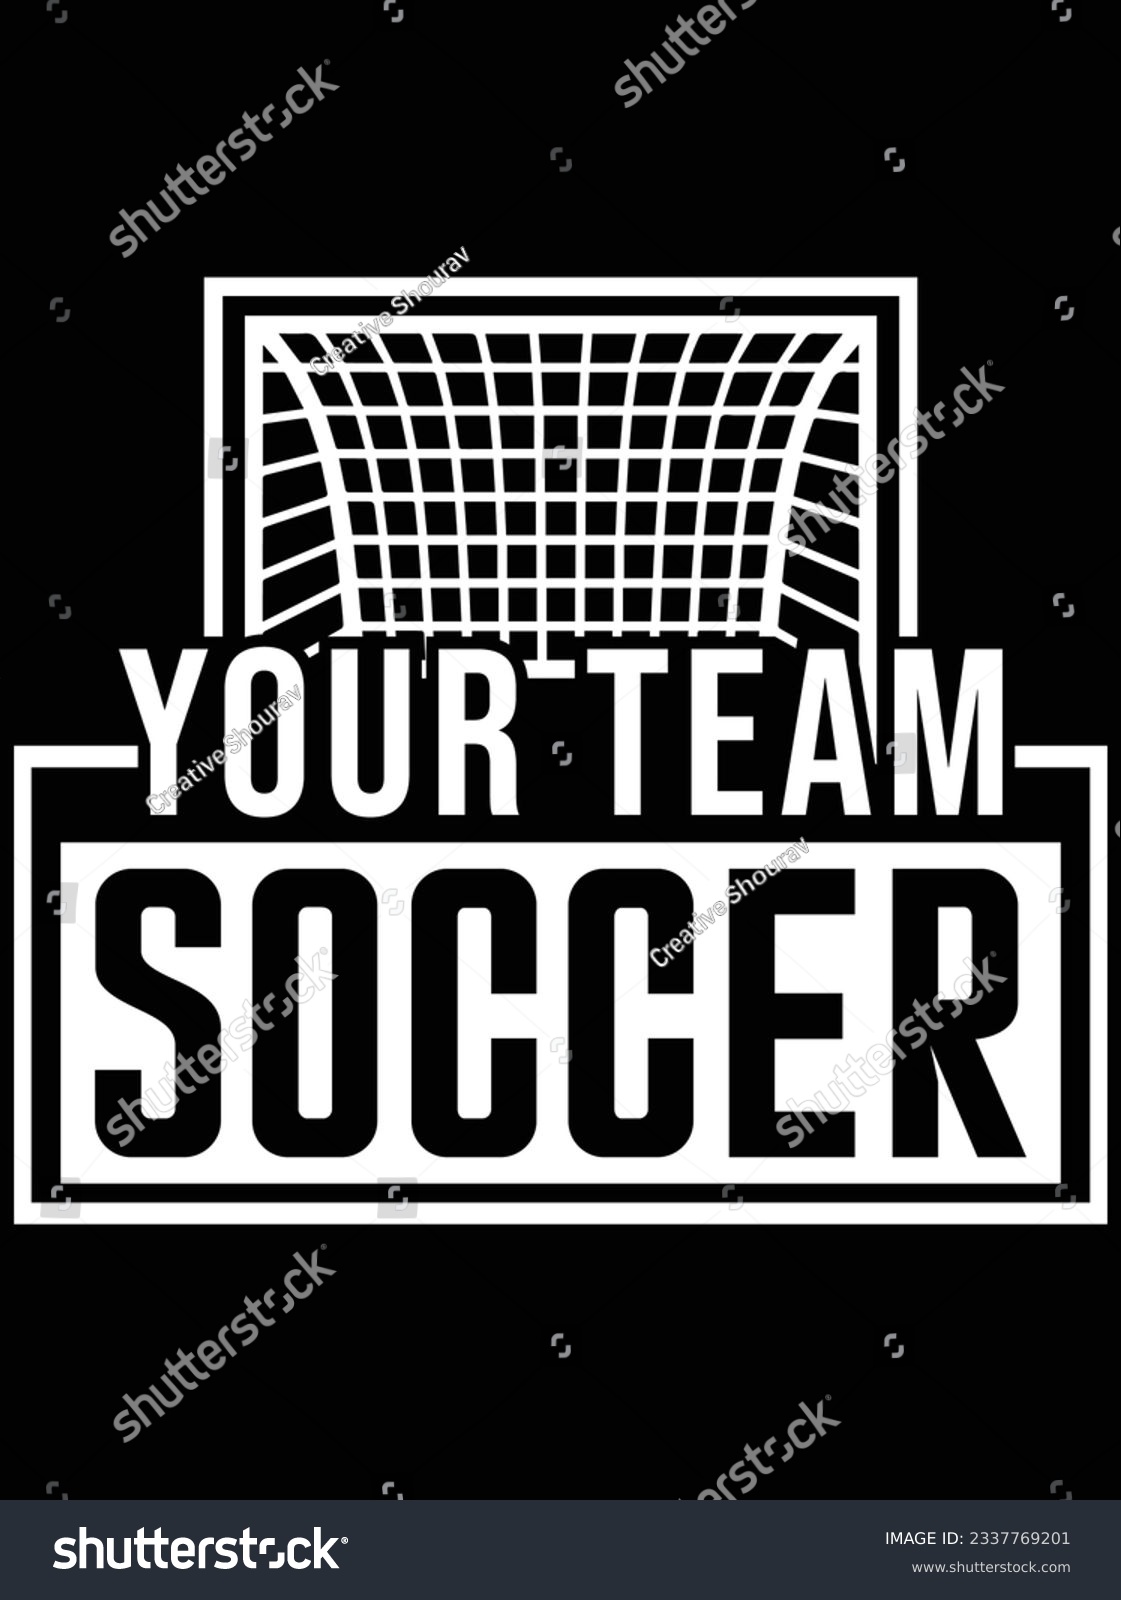 SVG of Your team soccer vector art design, eps file. design file for t-shirt. SVG, EPS cuttable design file svg